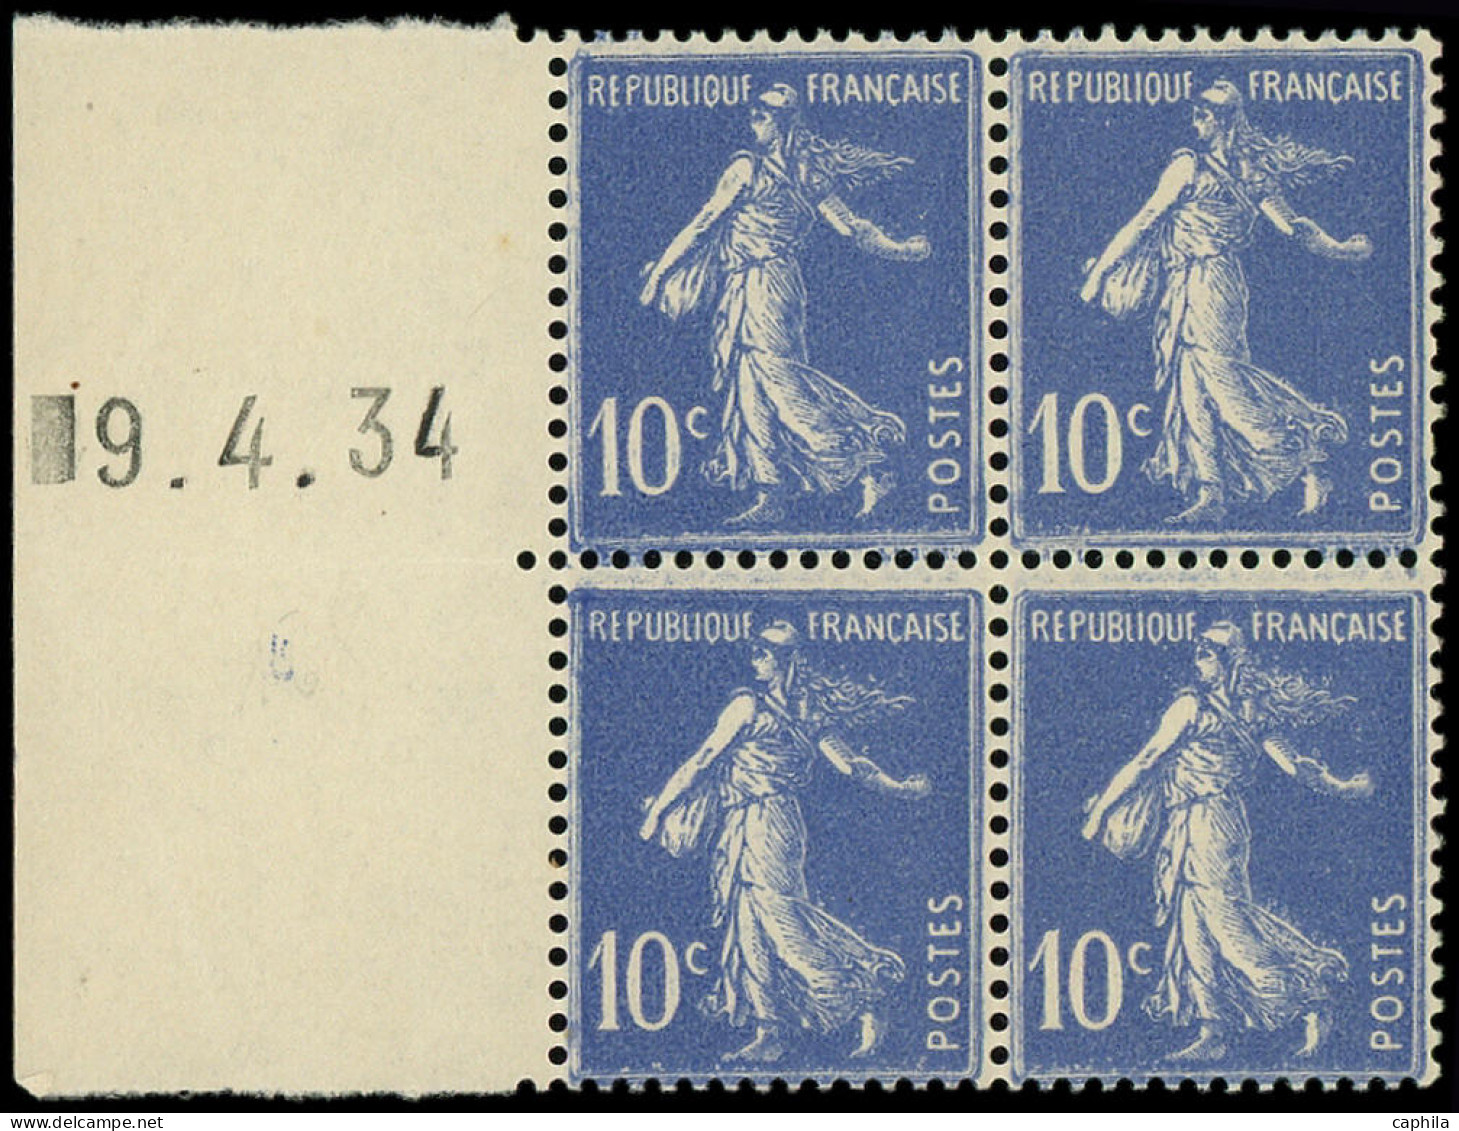 ** FRANCE - Poste - 279a, Type IV, Bloc De 4, Bdf Daté 19/4/34 (roulette): 10c. Semeuse Bleu - Unused Stamps